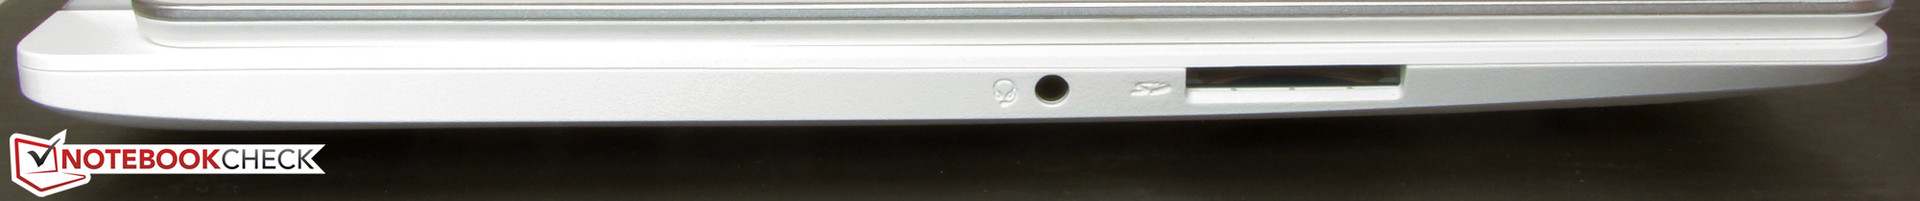 Acer Aspire V3-371-55GS Subnotebook Review - NotebookCheck.net Reviews